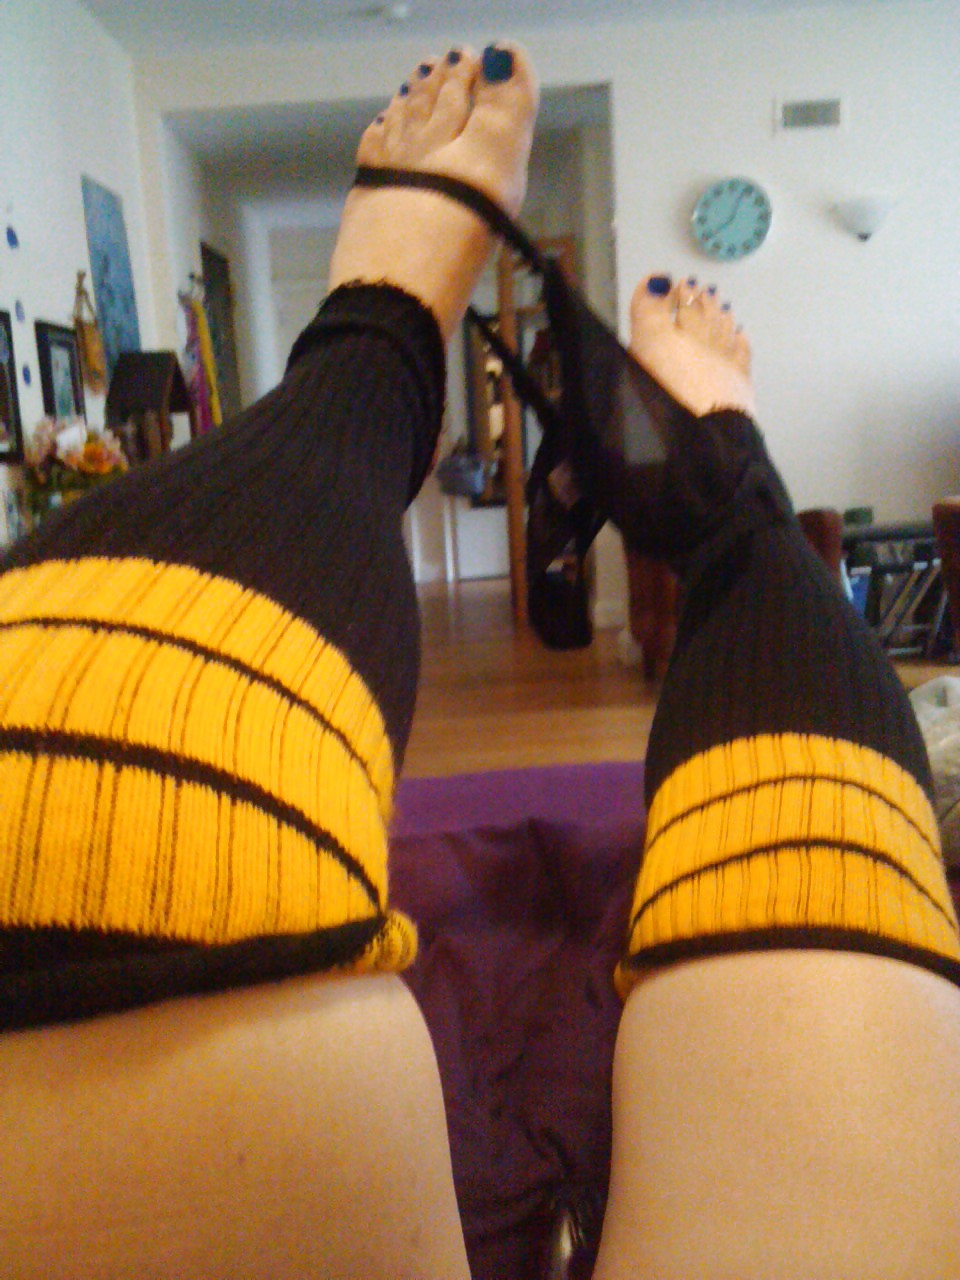 Tights and Tall Socks for Rrrrrr... #23659748